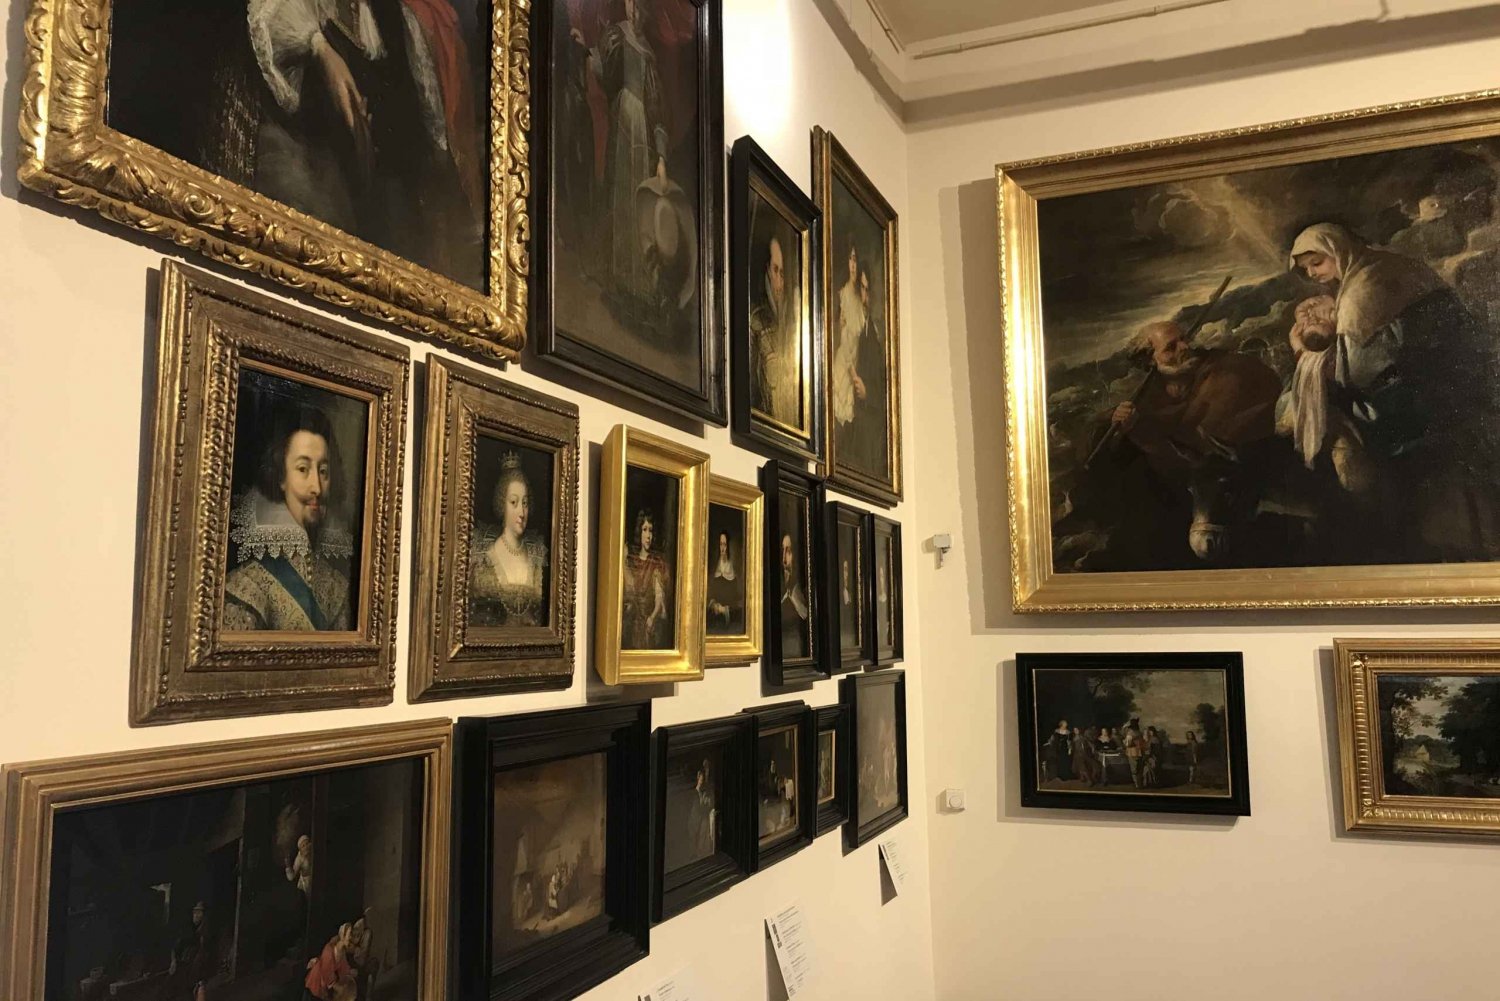 Krakow: Center for European Culture - Paintings Exhibition